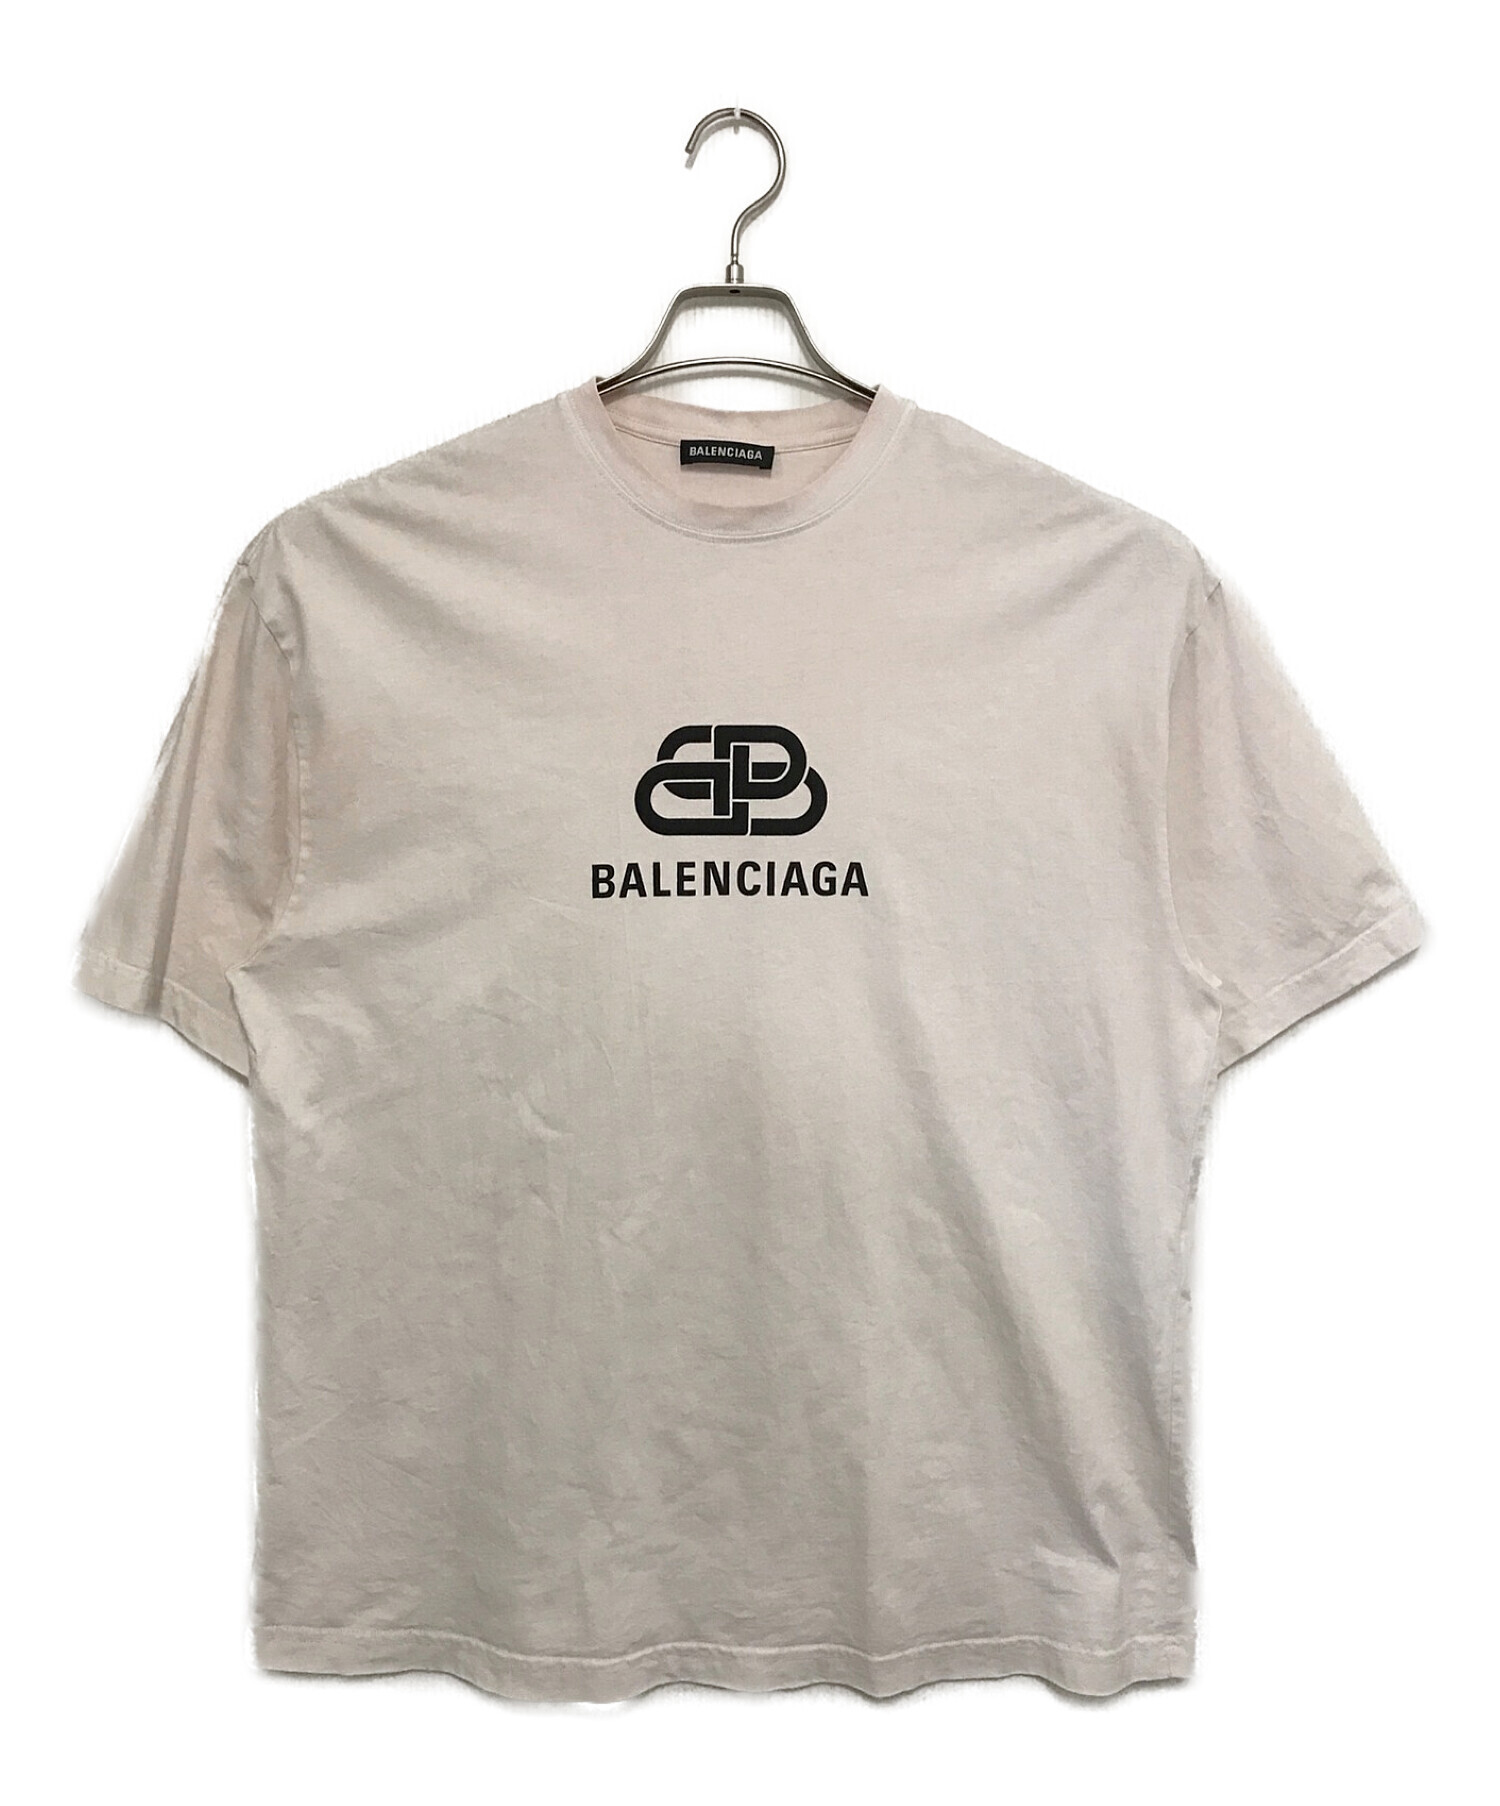 新品 BALENCIAGA BB ロゴ tee Tシャツ ホワイト バレンシアガサイズXL